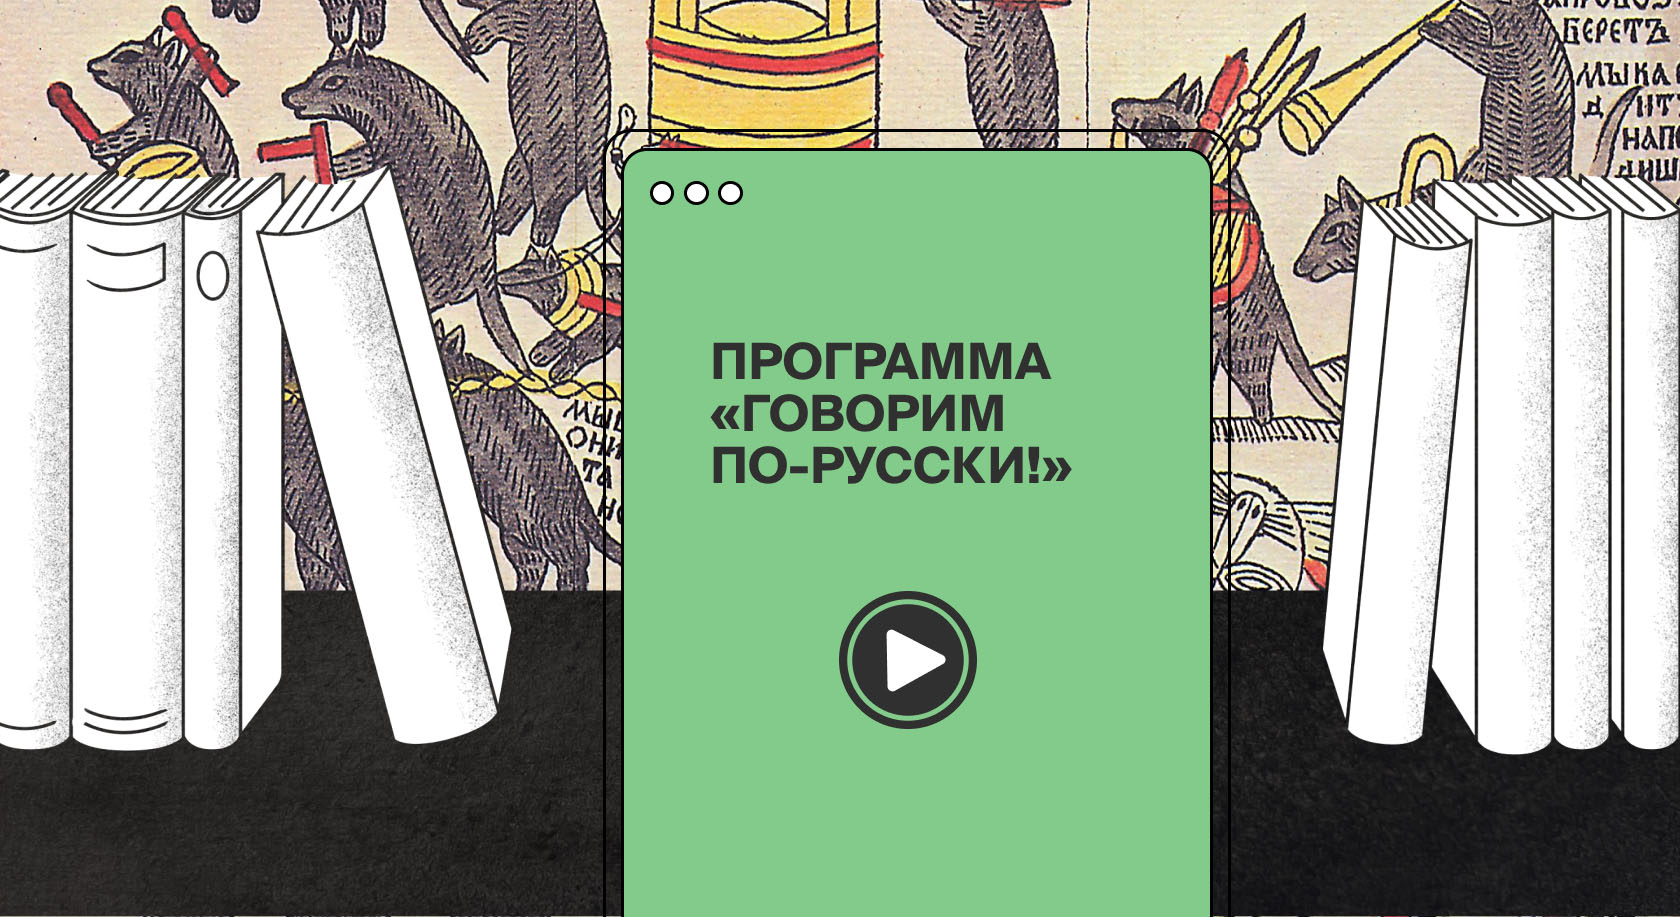 «Говорим по-русски!»: воспоминания об Апресяне, литургическая поэзия, лубок и уроки чтения